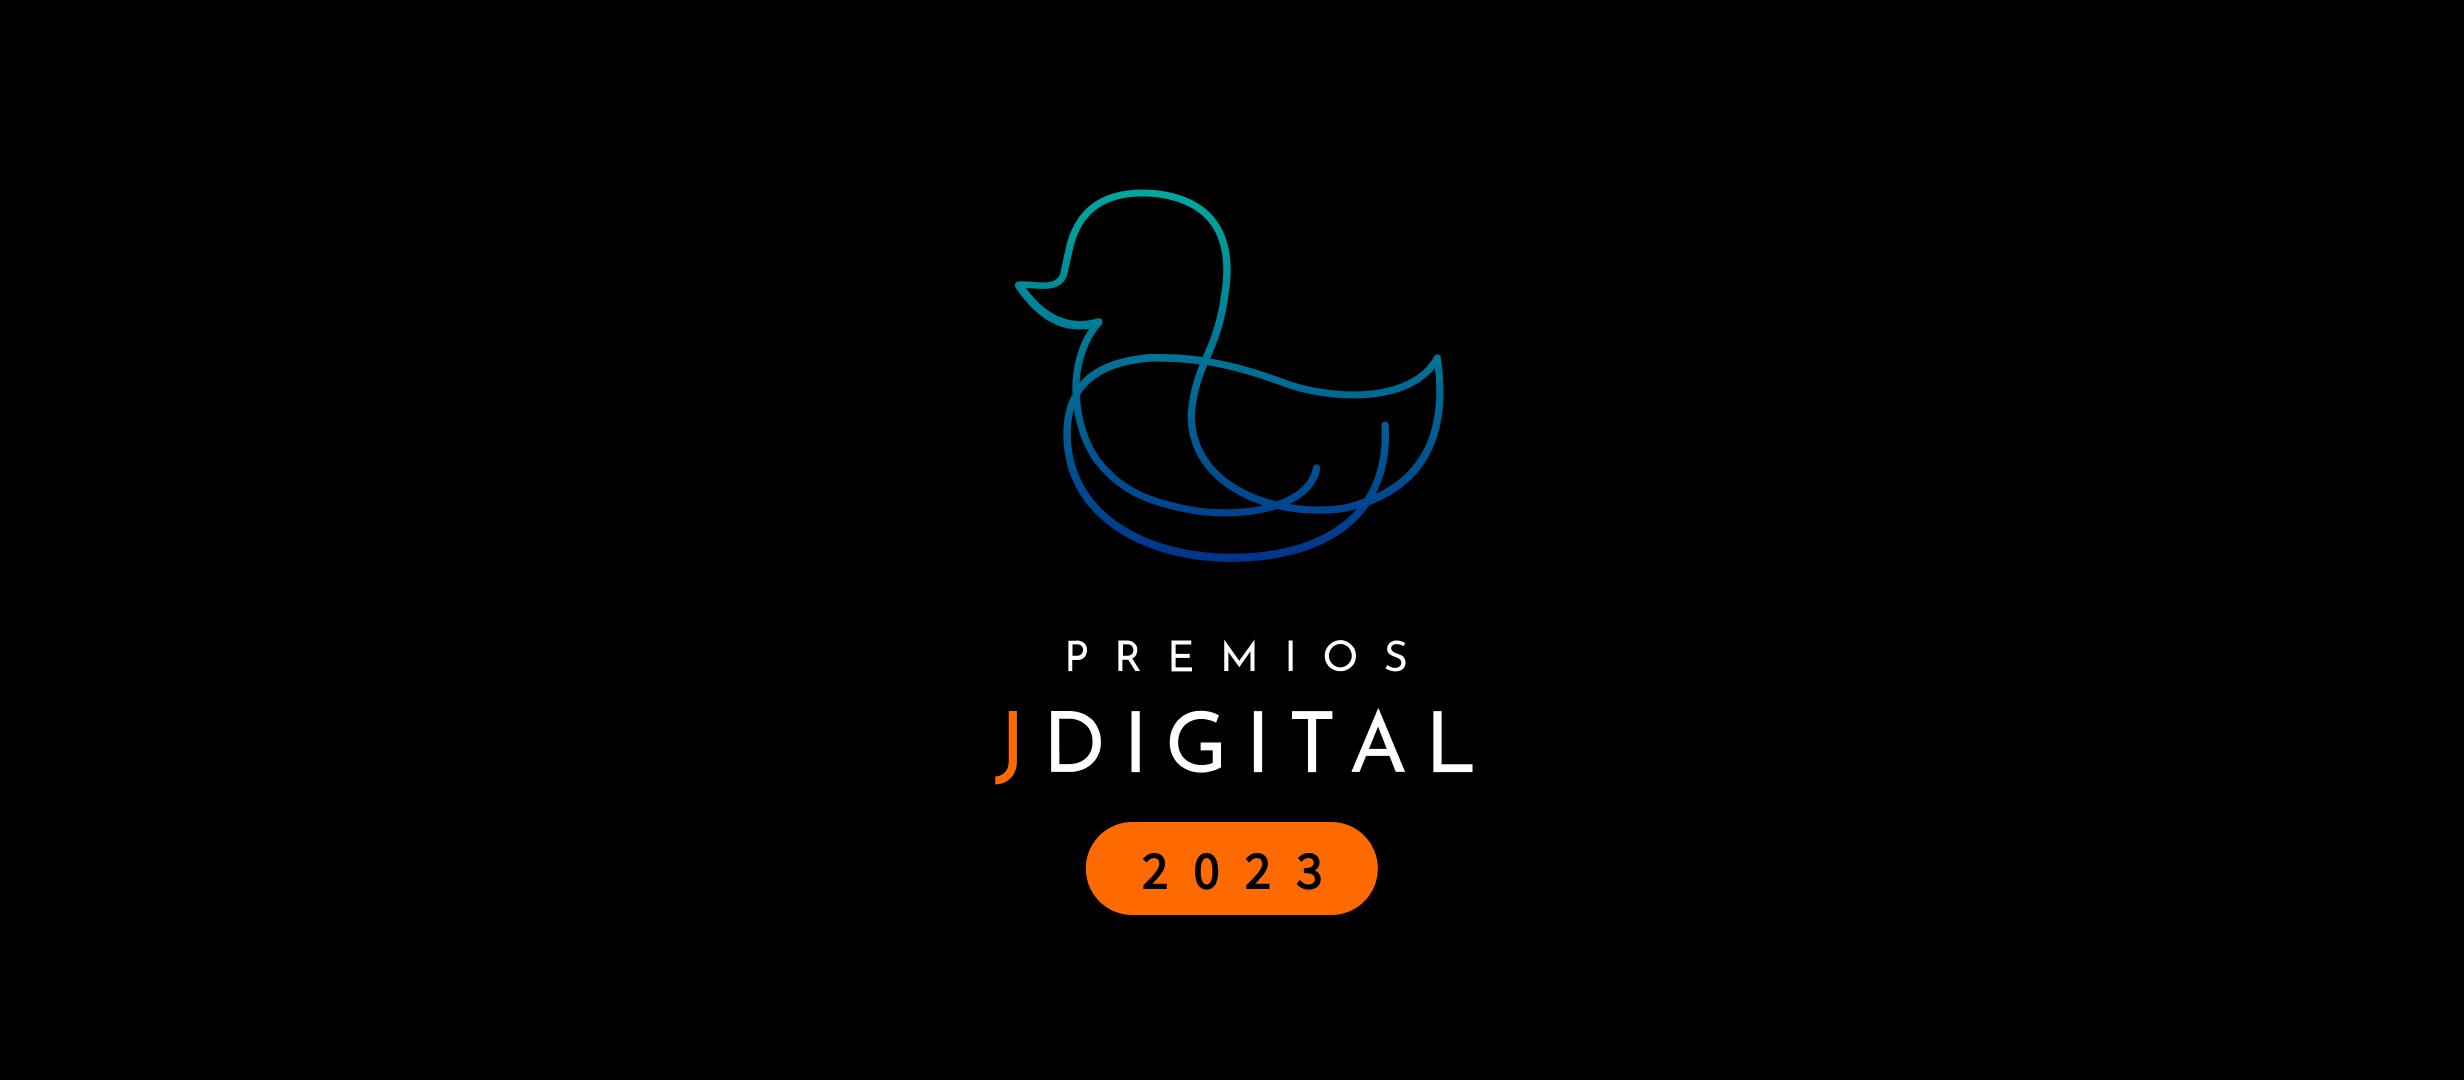 Legalbet, nominado a la mejor web / Afiliado de información de Apuestas en los premios Jdigital